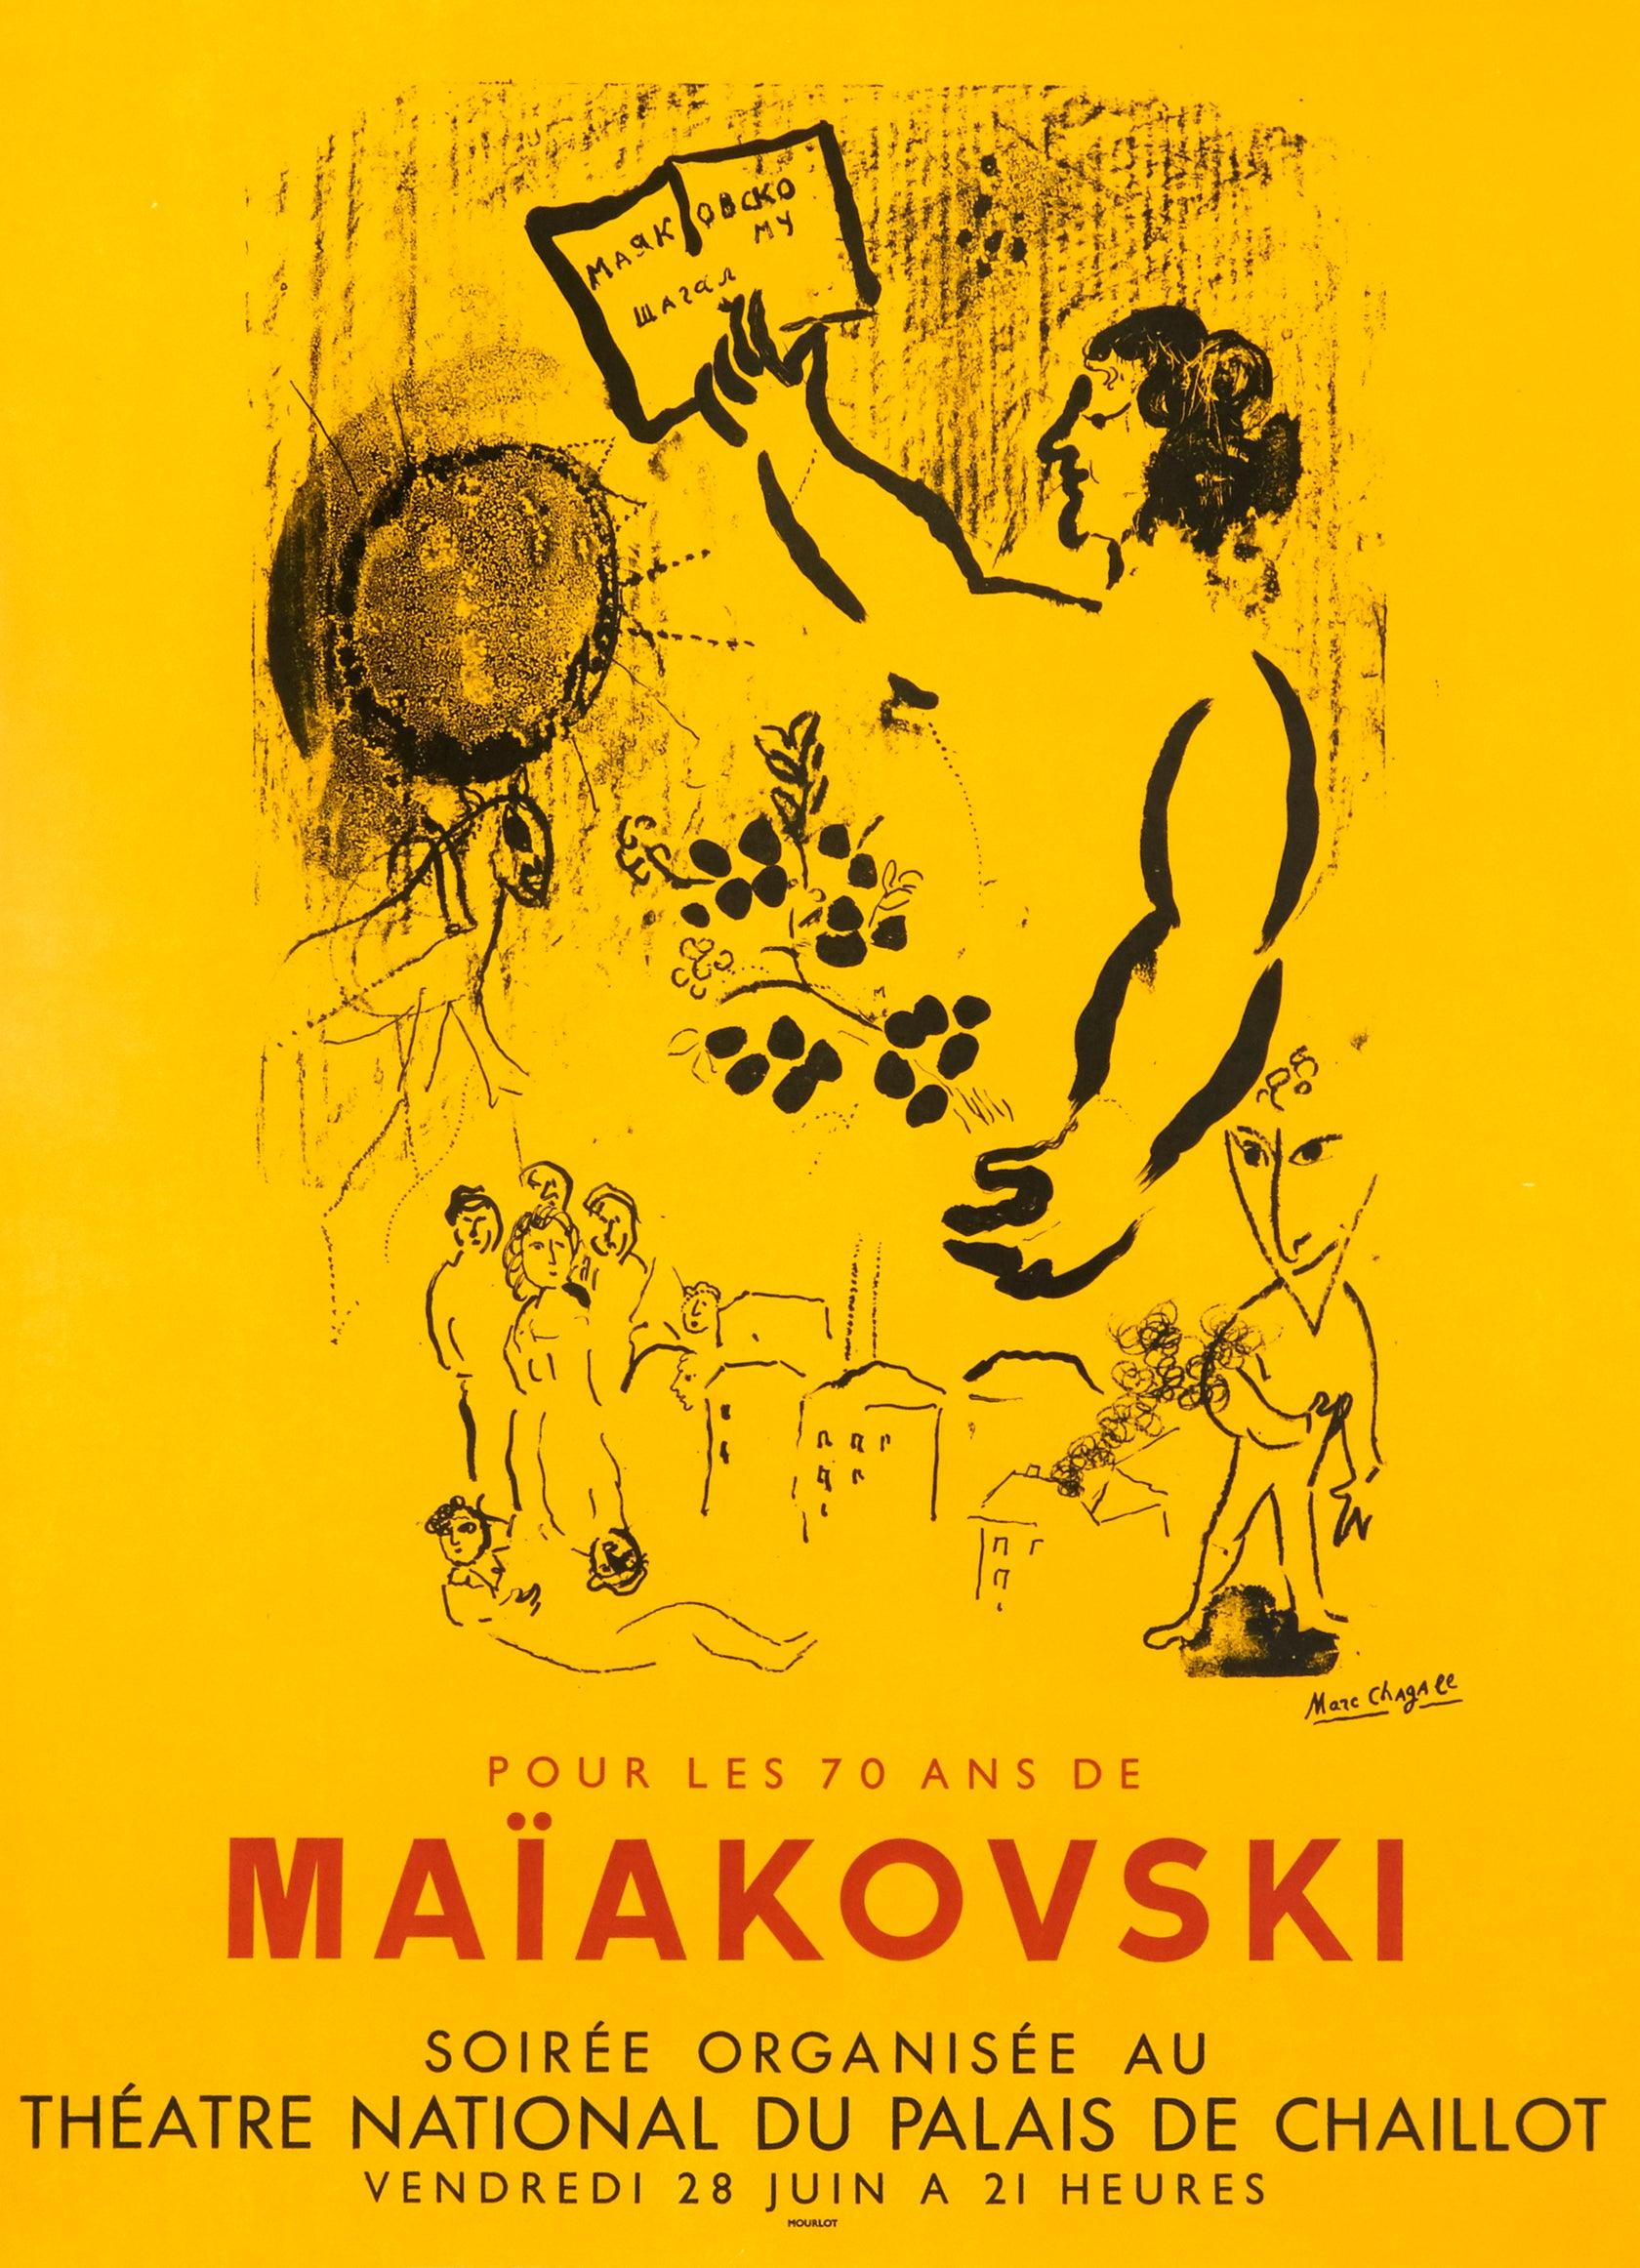 Künstler: Marc Chagall

Medium: Original Lithografie-Plakat, 1963

Abmessungen: 26 x 19,5 Zoll, 66 x 49,5 cm

Klassisches Posterpapier - Ausgezeichneter Zustand A

Dieses Originalplakat wurde 1963 im Atelier Mourlot gedruckt, um das Leben des